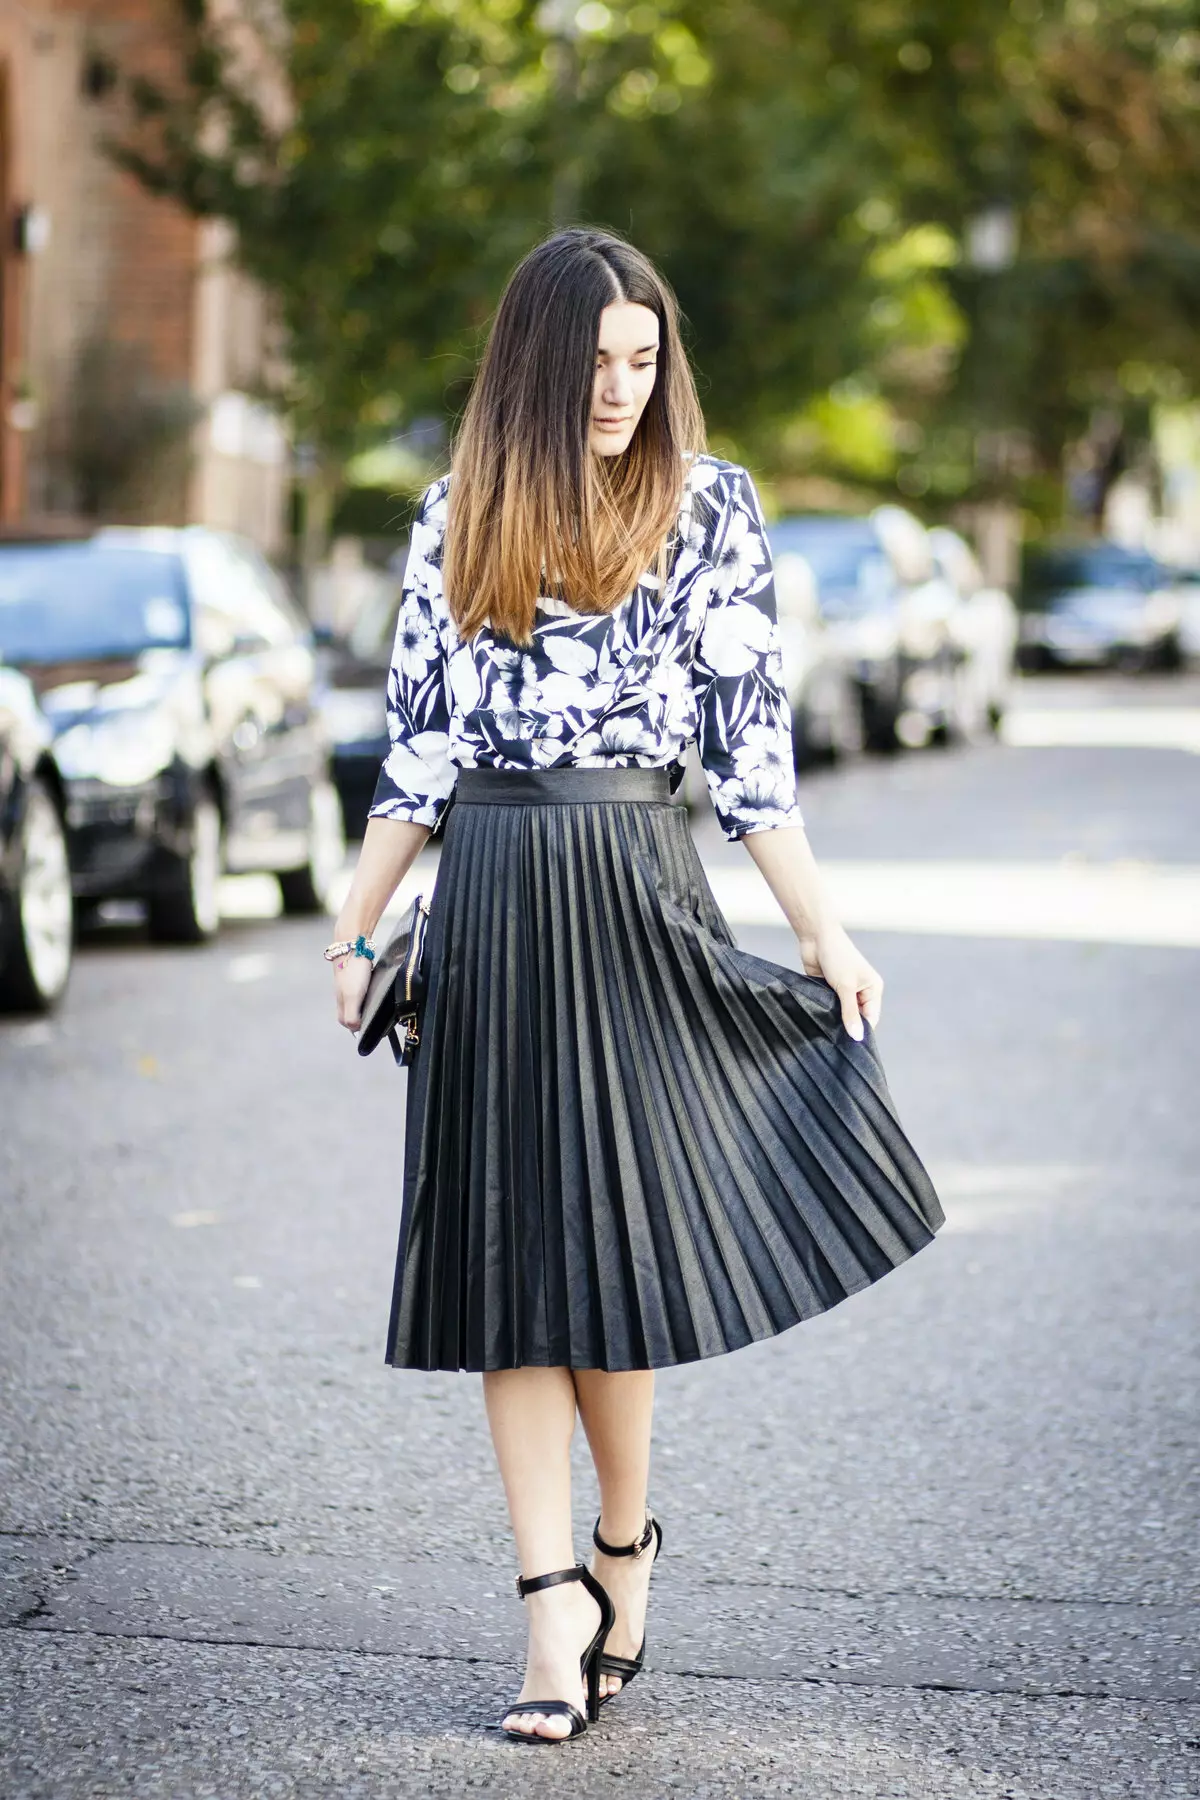 Placs Skirt Kulit: Apa yang perlu dipakai Rok Eco-Piece Pleated? Imej dengan skirt kulit tiruan hitam dan coklat 800_42